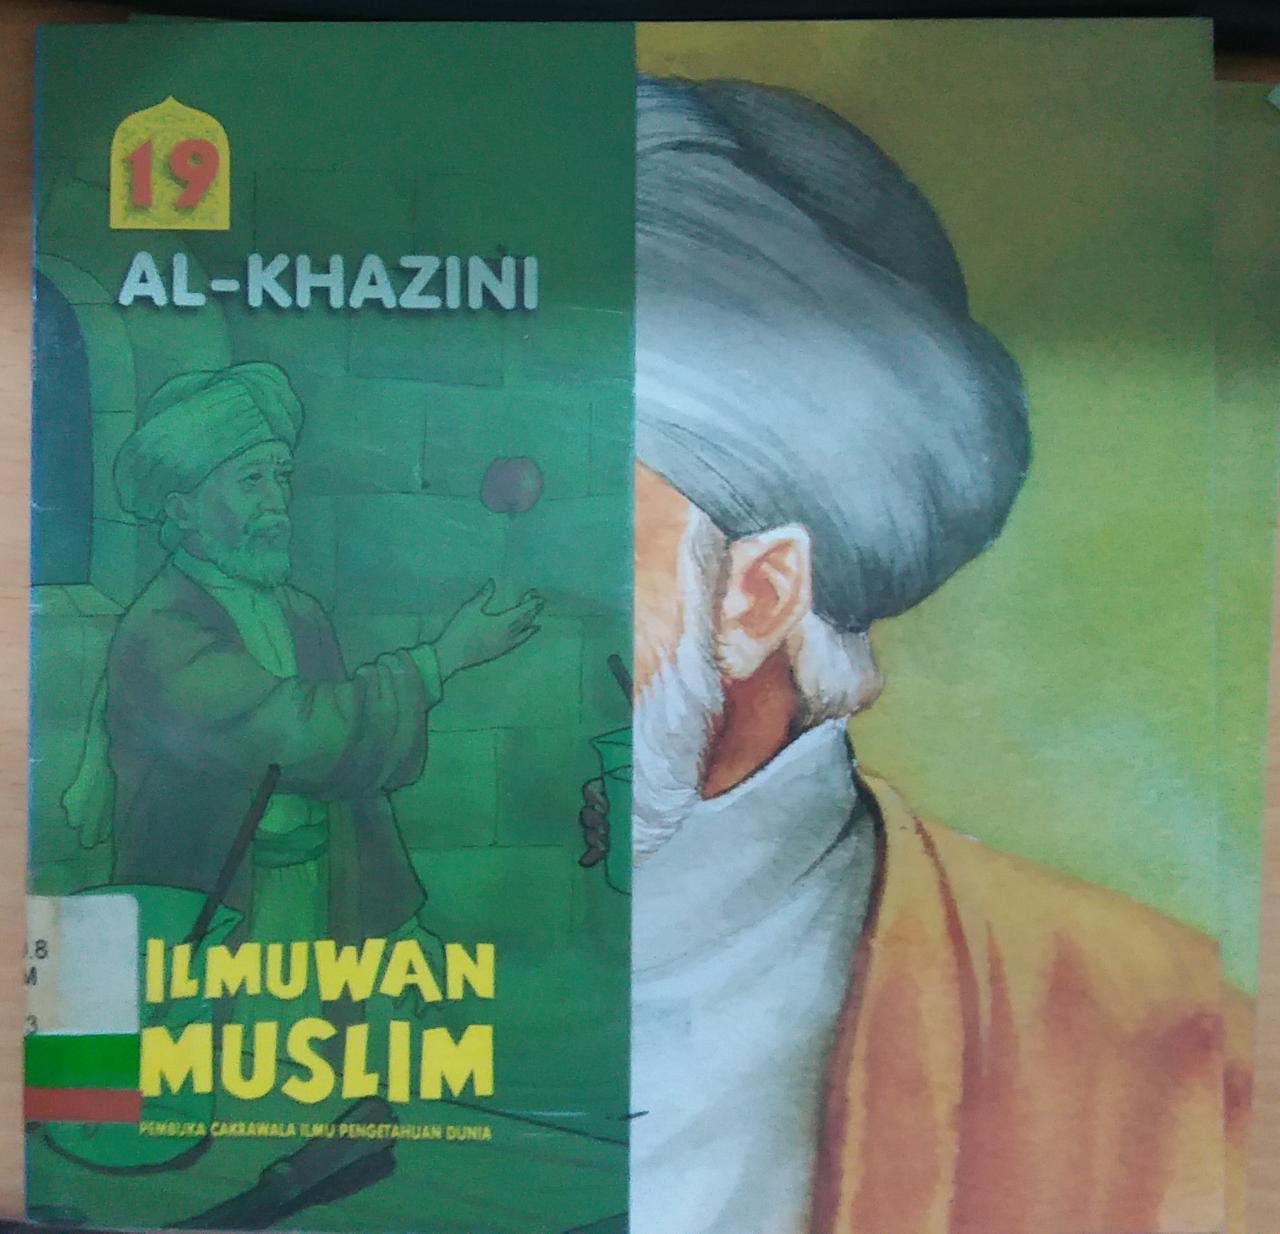 ILMUWAN Muslim Pembuka Cakrawala Ilmu Pengetahuan Dunia Jilid 19 :  Al-Khazini; editor Dyah P